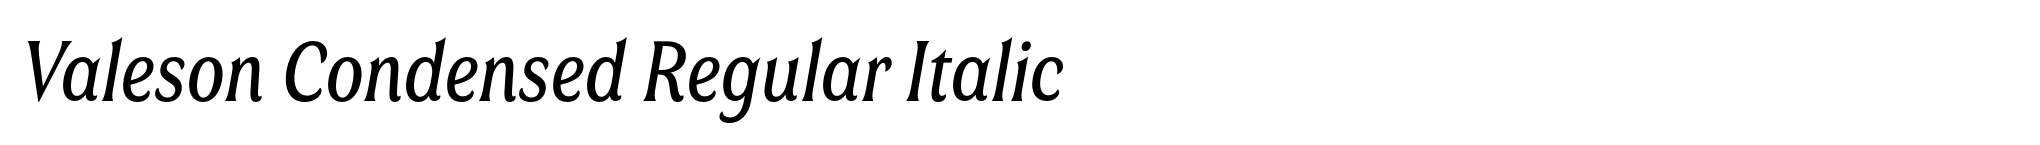 Valeson Condensed Regular Italic image